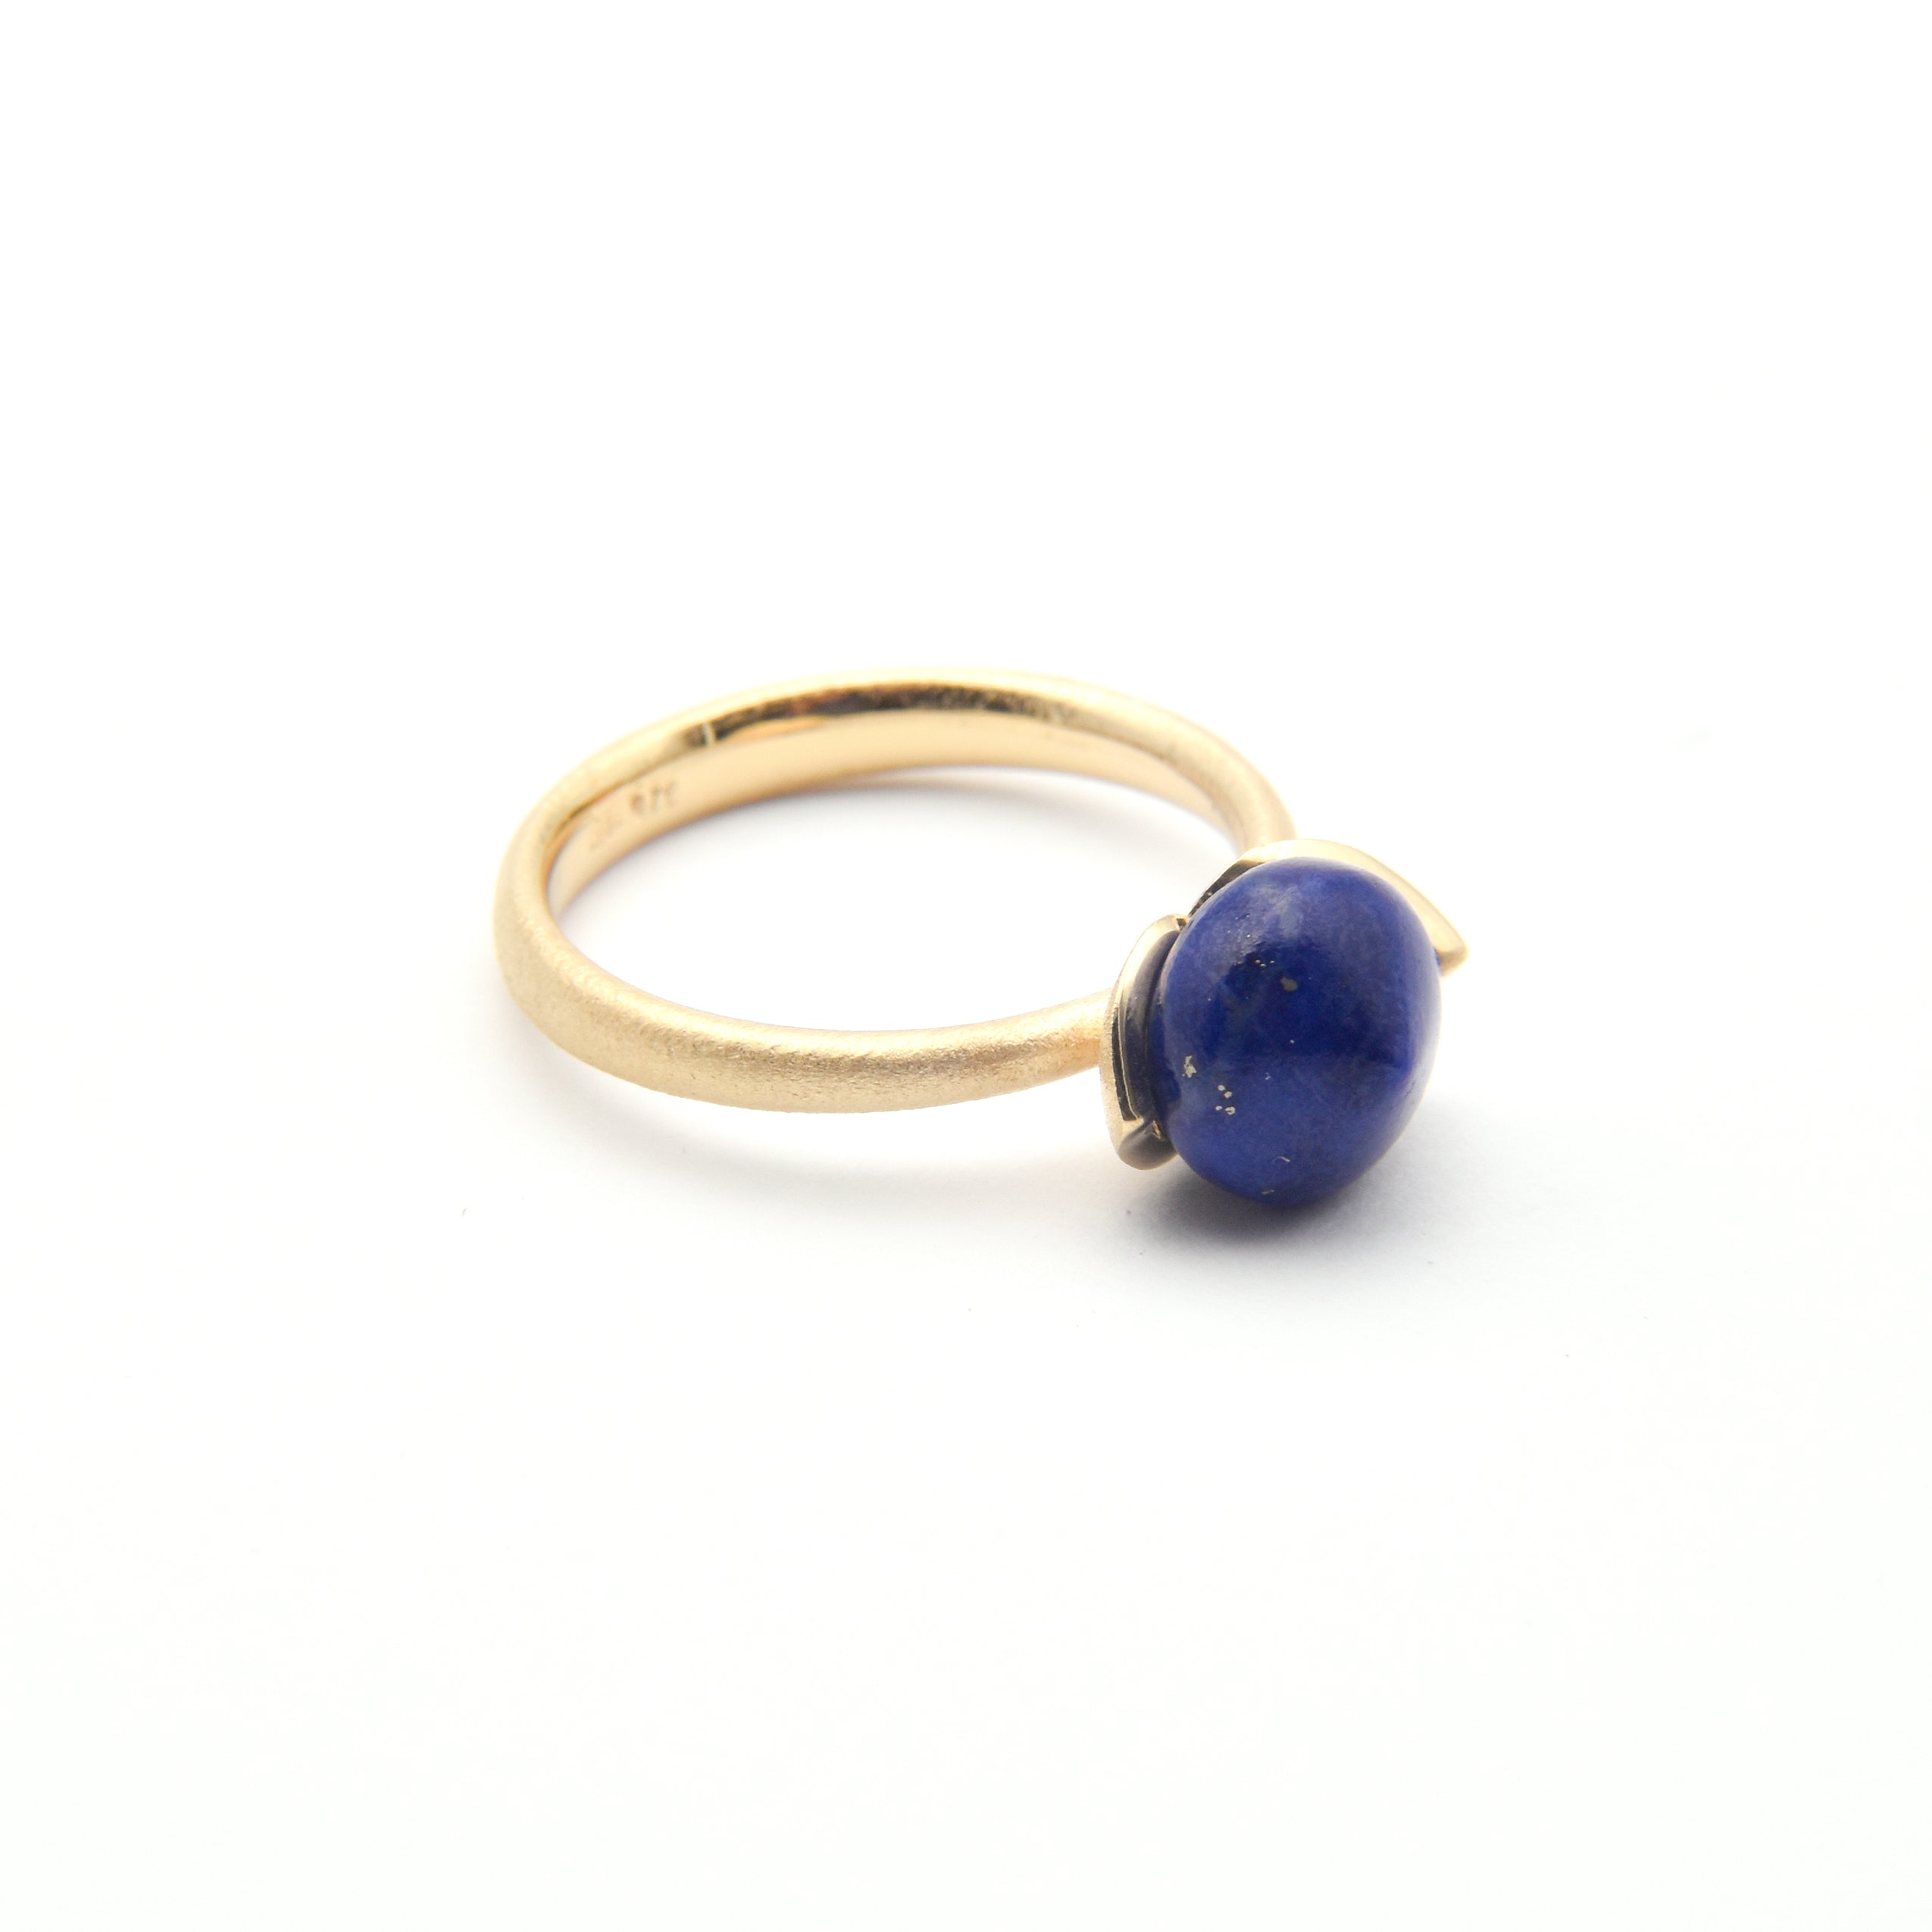 Dolce ring "smal" med lapis lazuli 925/- kr